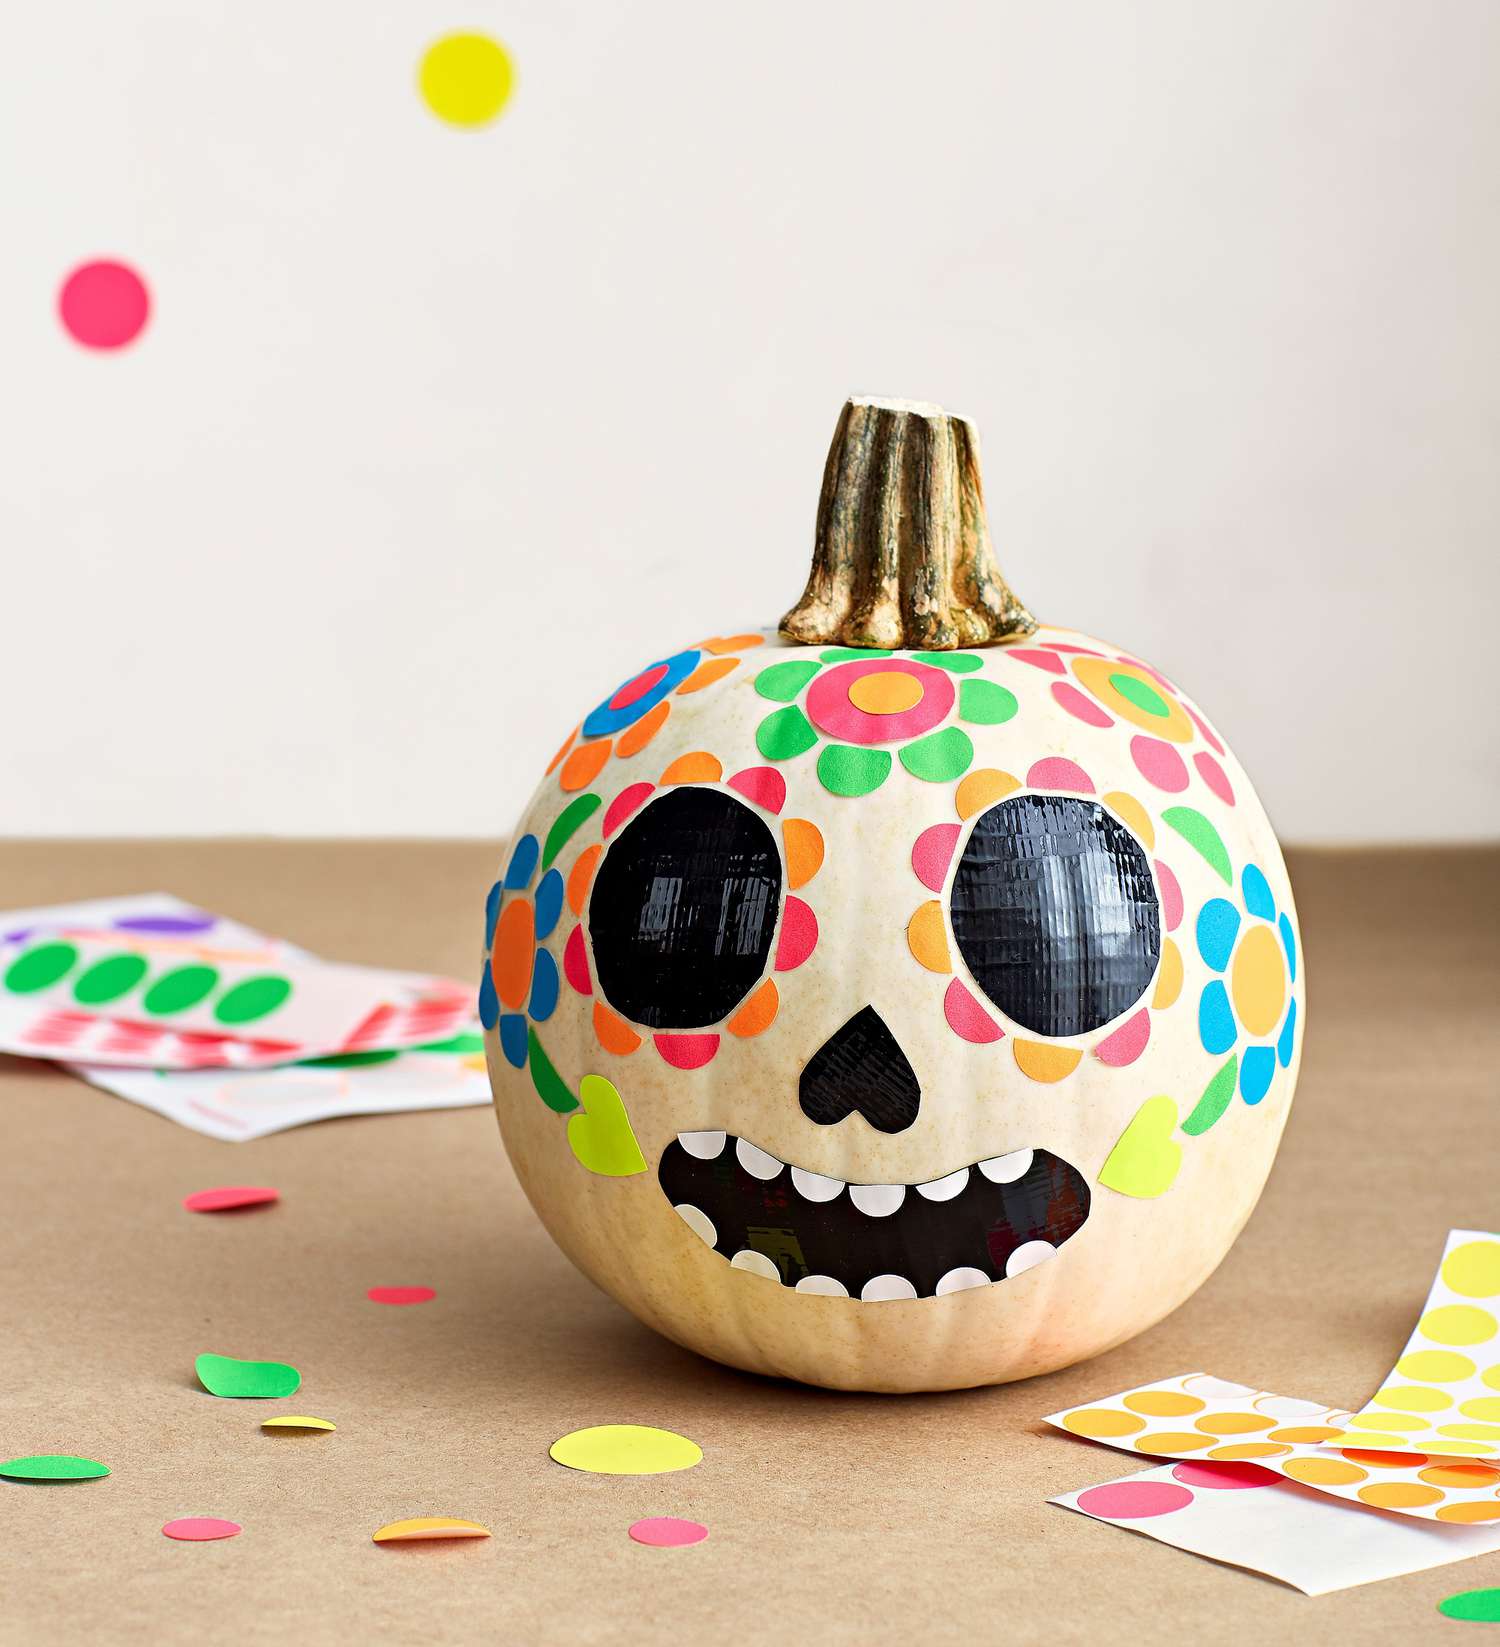 Easy No-Carve Pumpkin Decorating Ideas for Kids | Parents